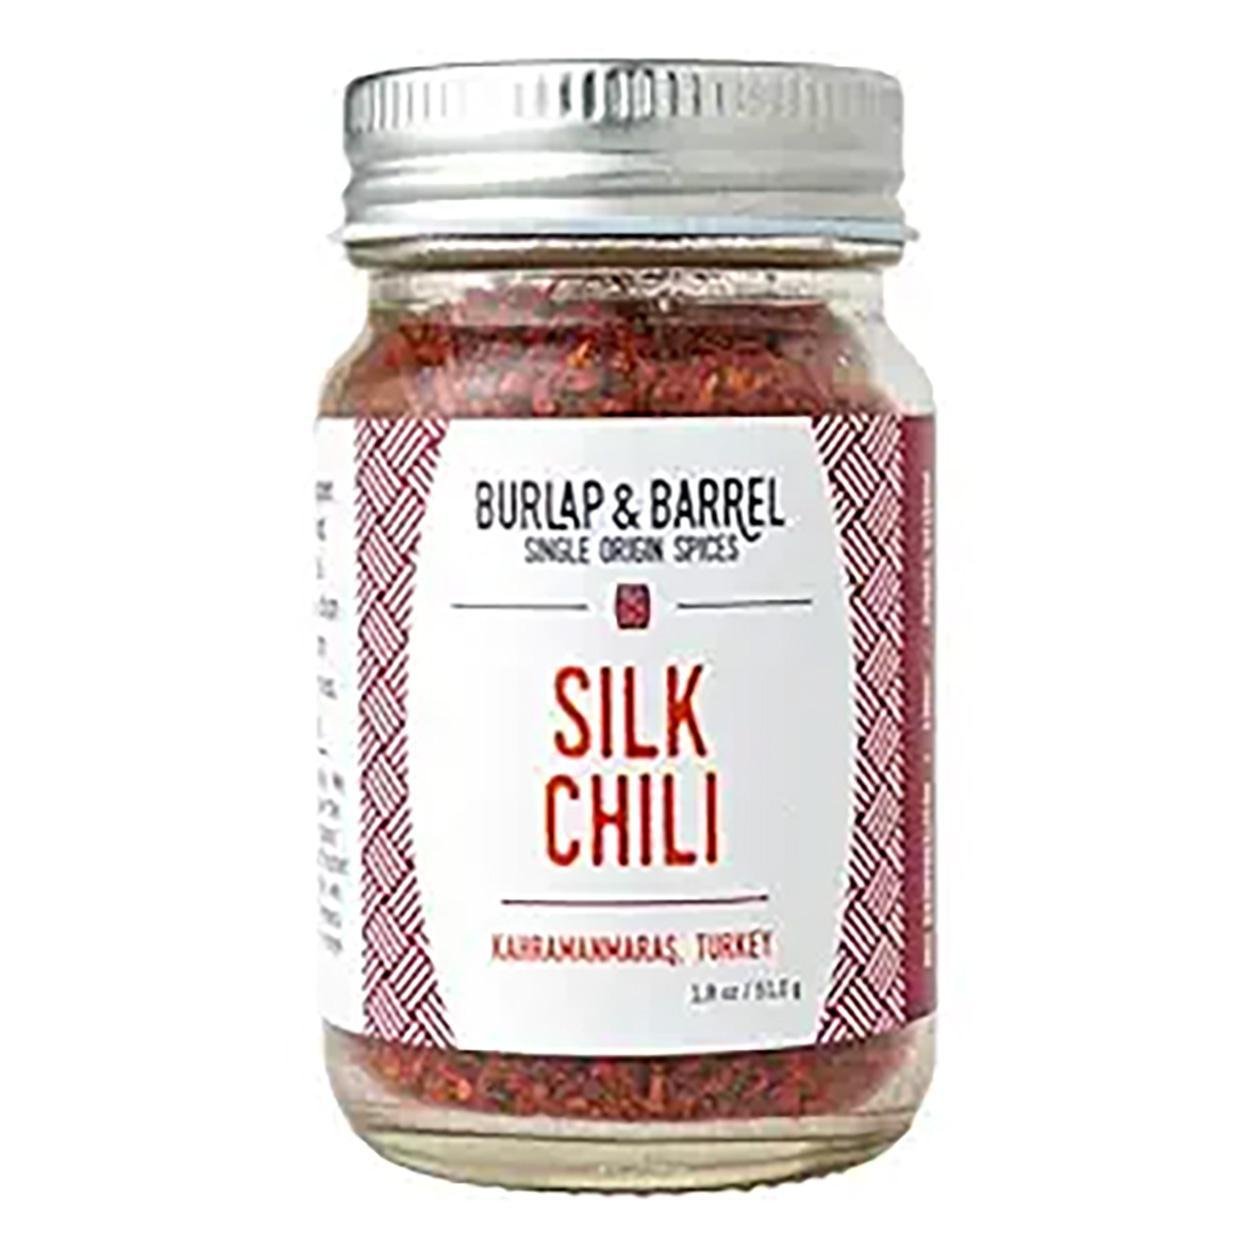 Burlap & Barrel - Silk Chili (1.8OZ) - The Epicurean Trader